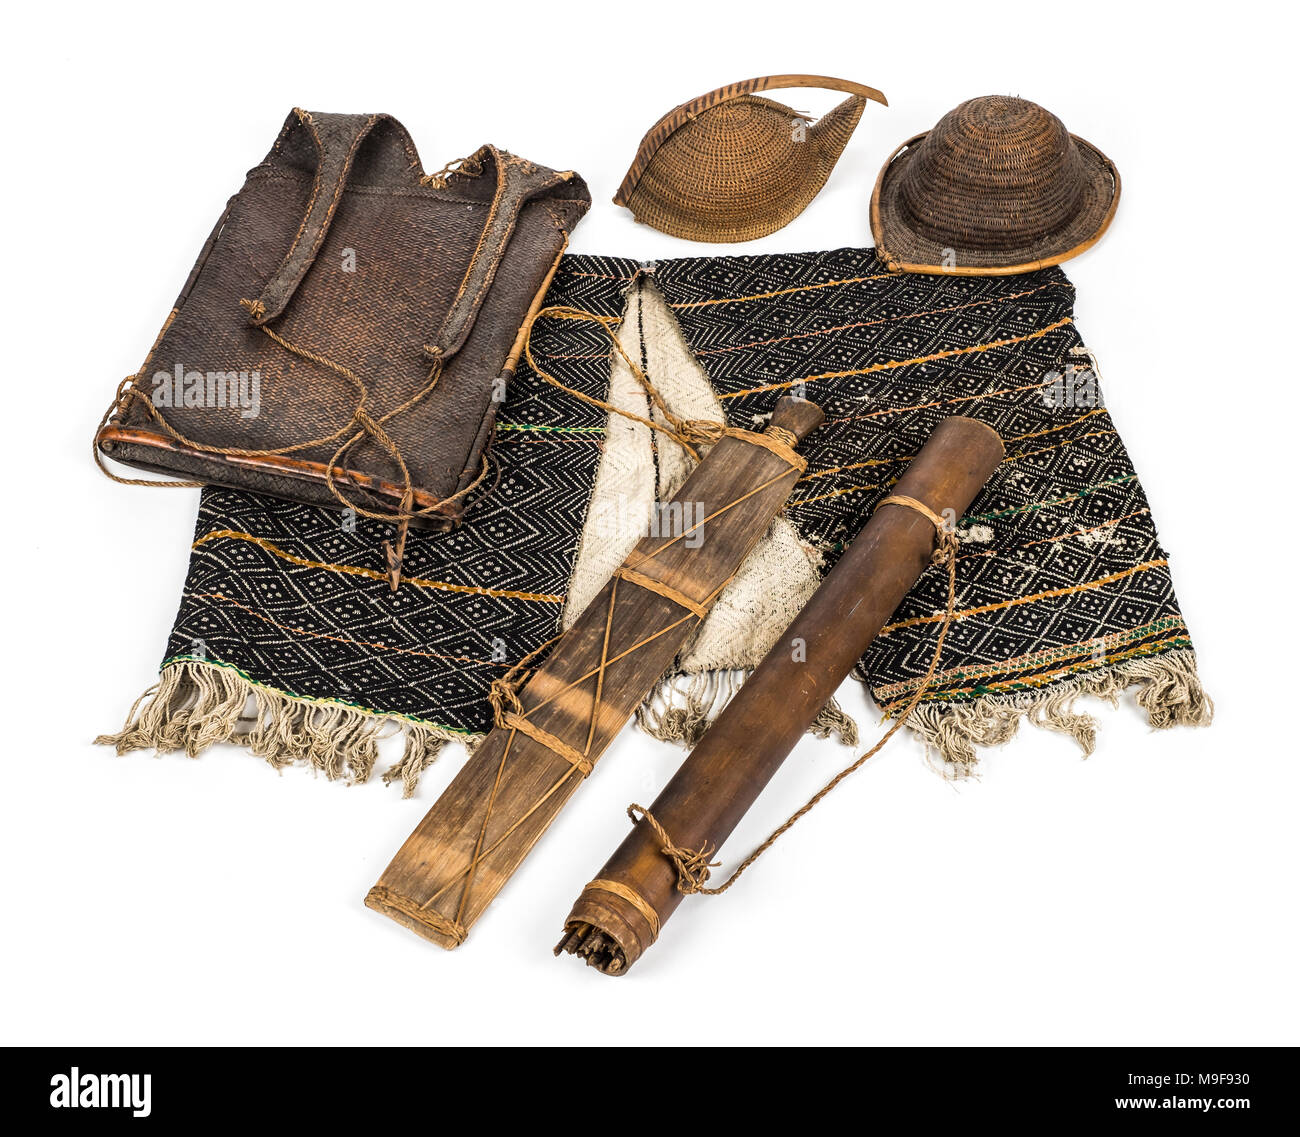 Tribù Apatani elementi tra cui un Yatee hat, Bopa hat e altri articoli di tessuto da bambù e canna da zucchero. La Apatani sono da Arunachal Pradesh in India. Foto Stock